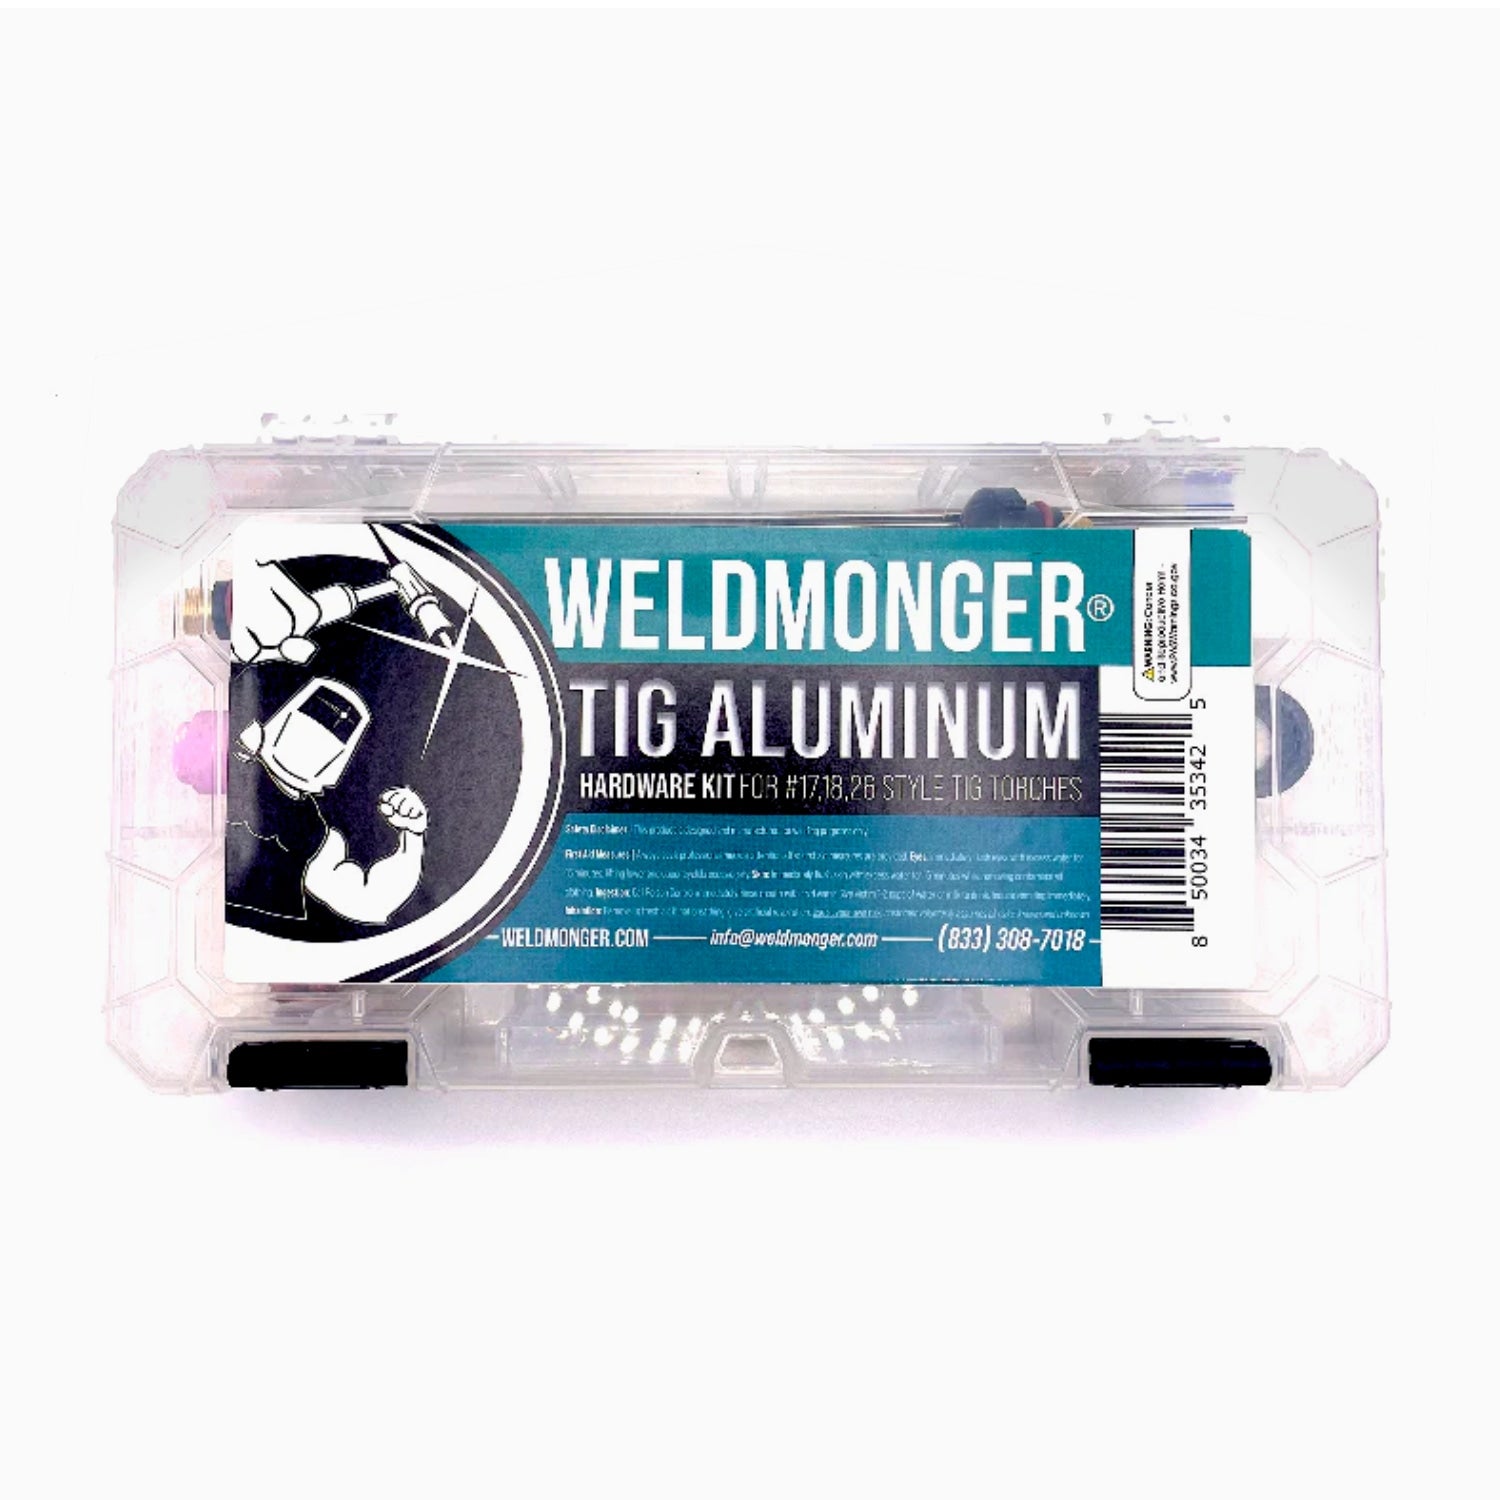 NEW! Weldmonger® TIG Aluminum Kit - for #17/18/26 Style Torches